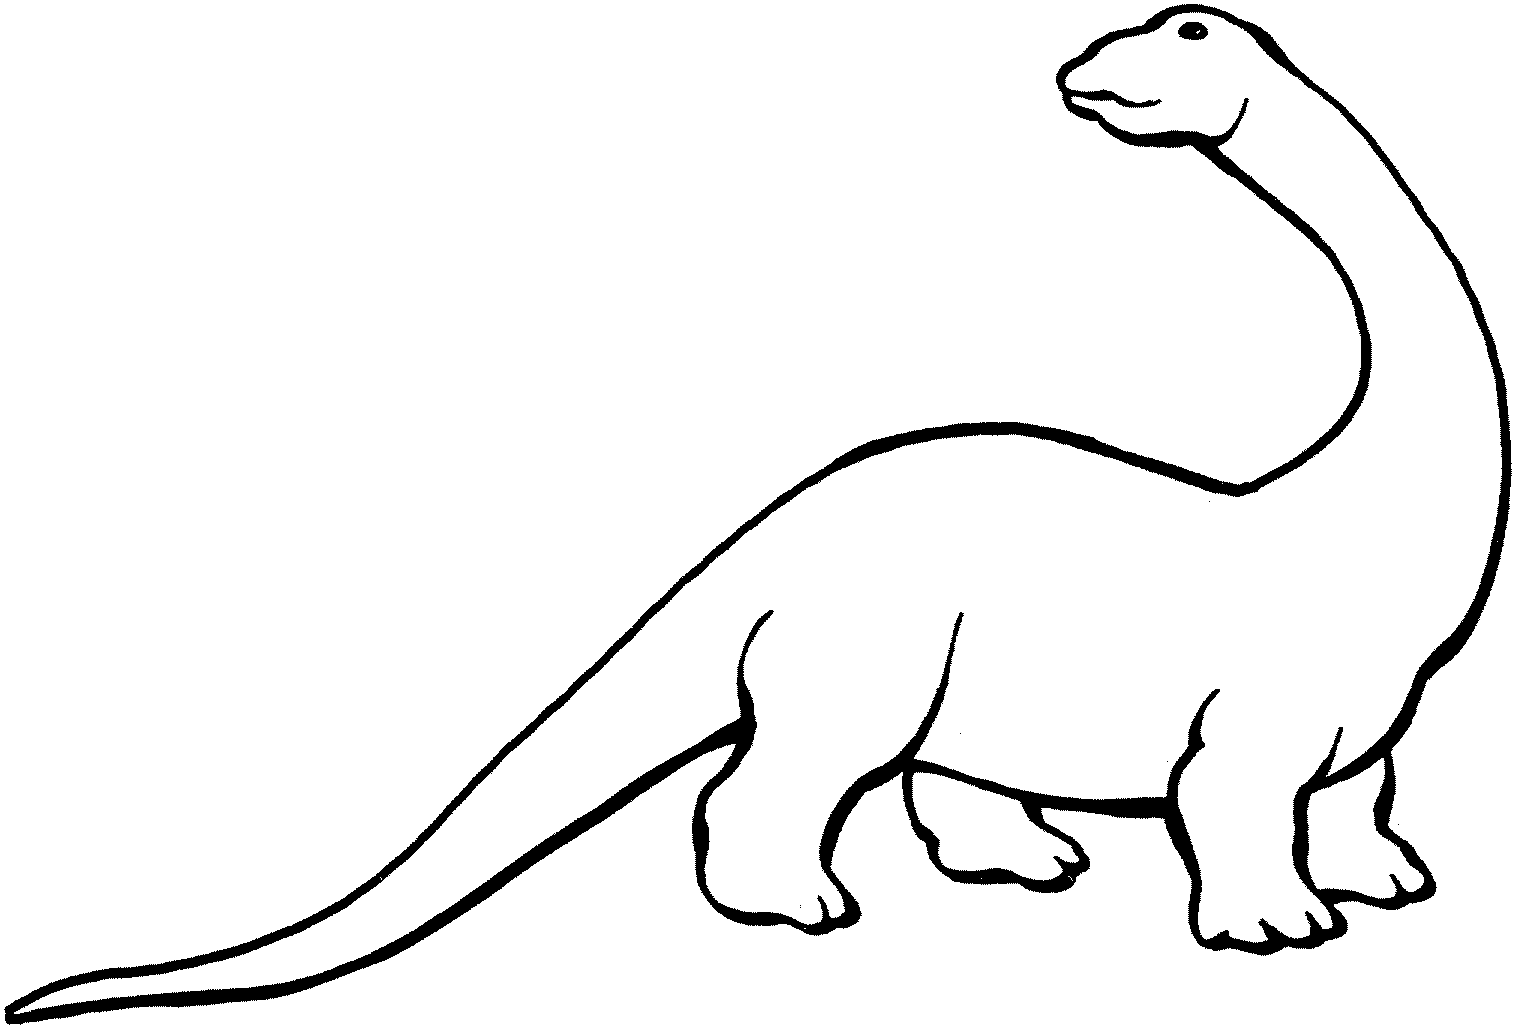 Трафарет динозавра для рисования